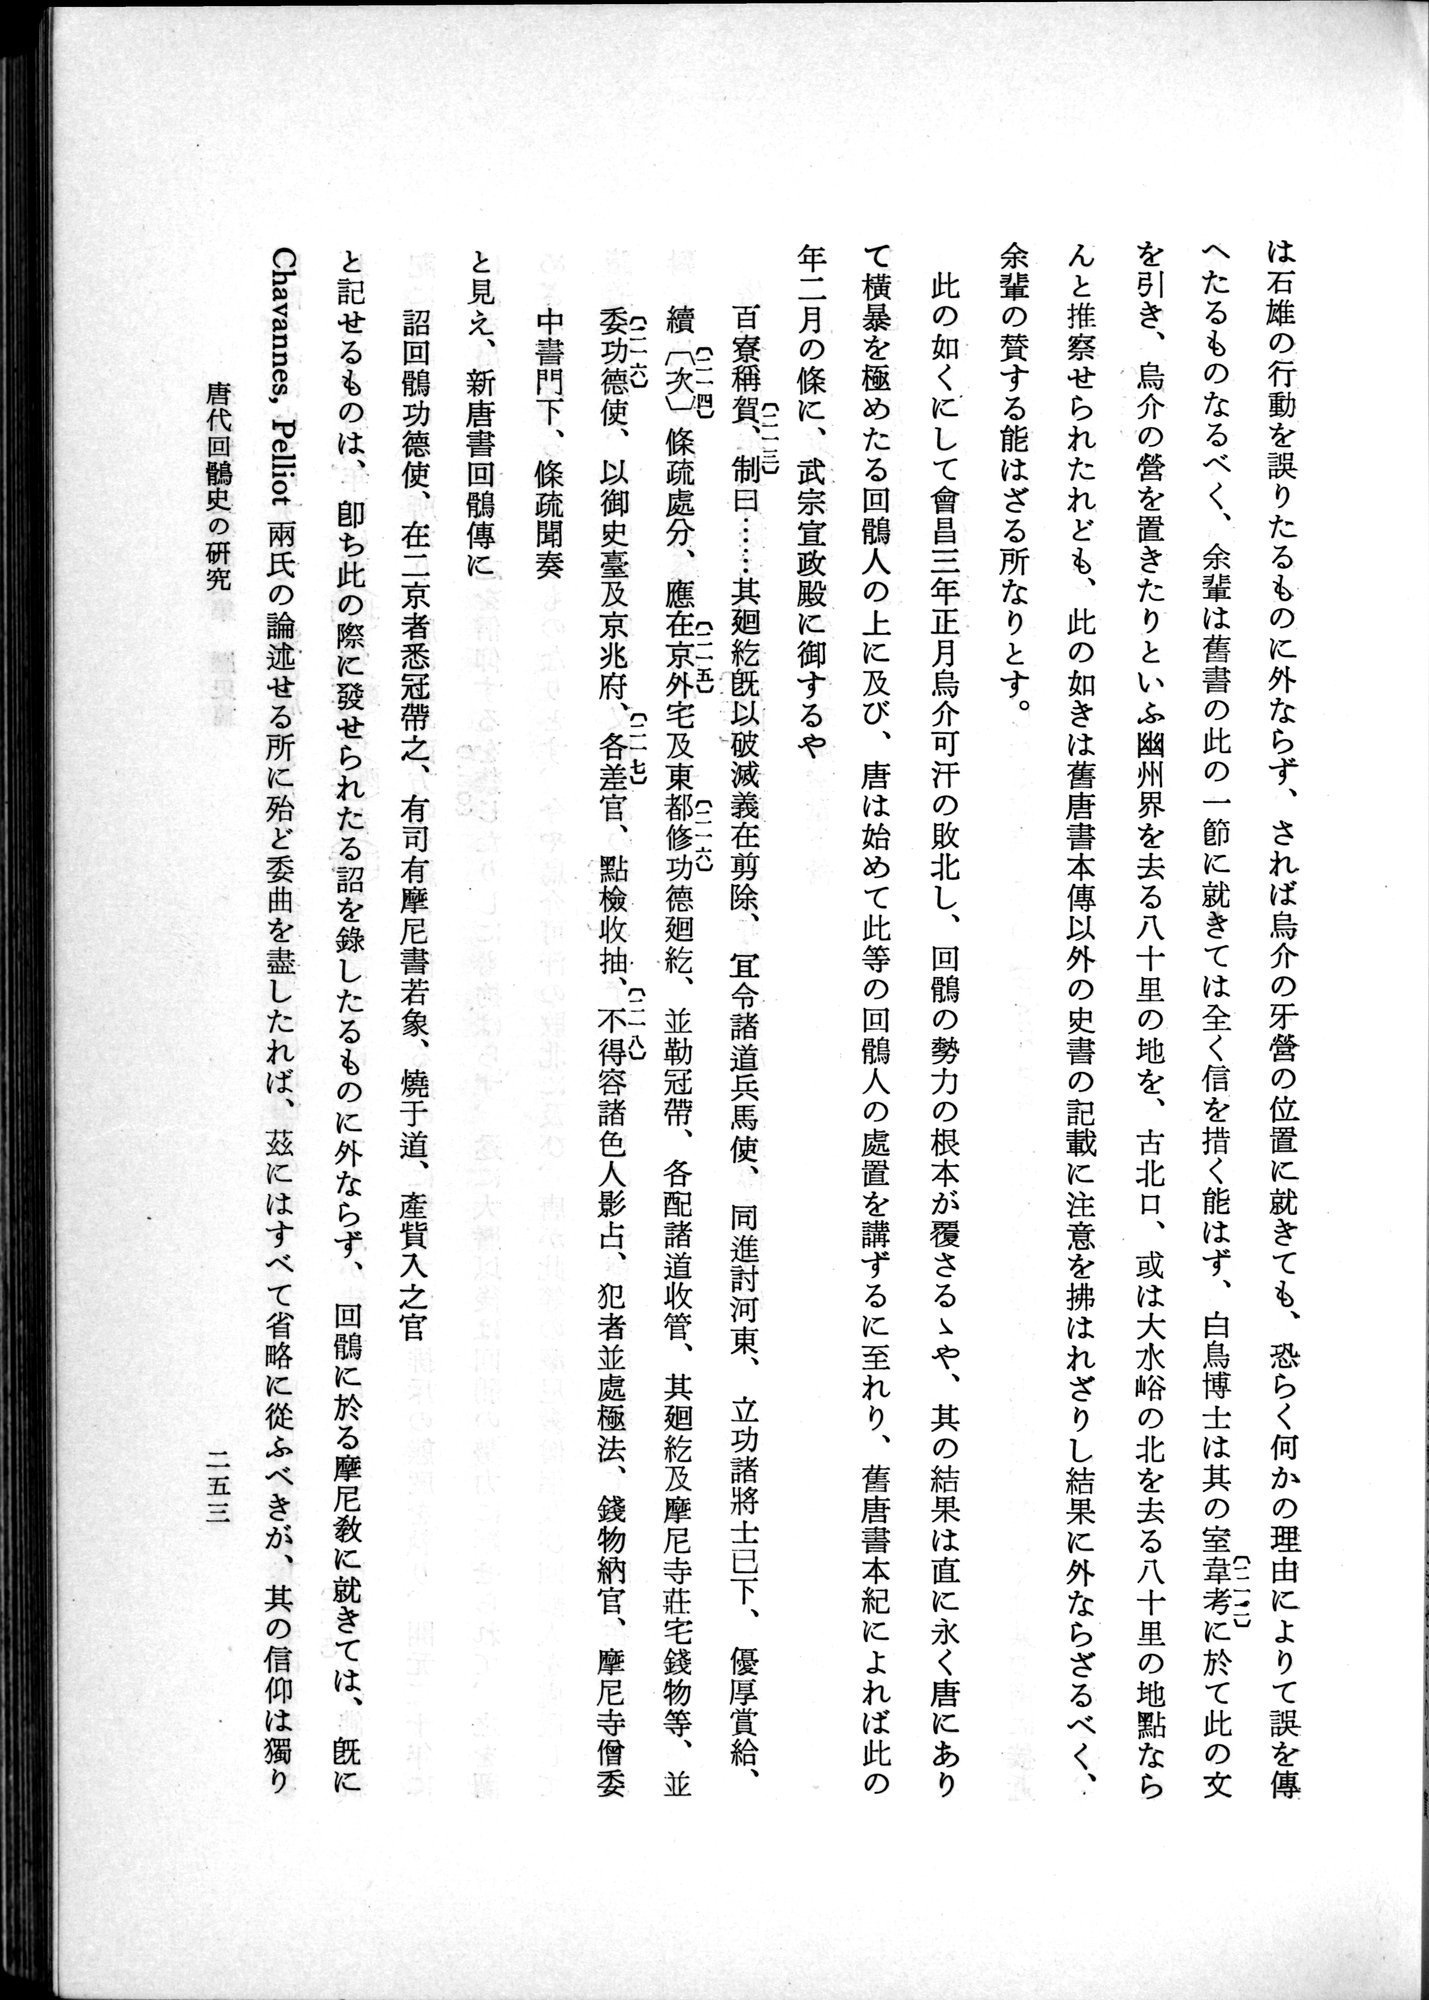 羽田博士史学論文集 : vol.1 / Page 291 (Grayscale High Resolution Image)